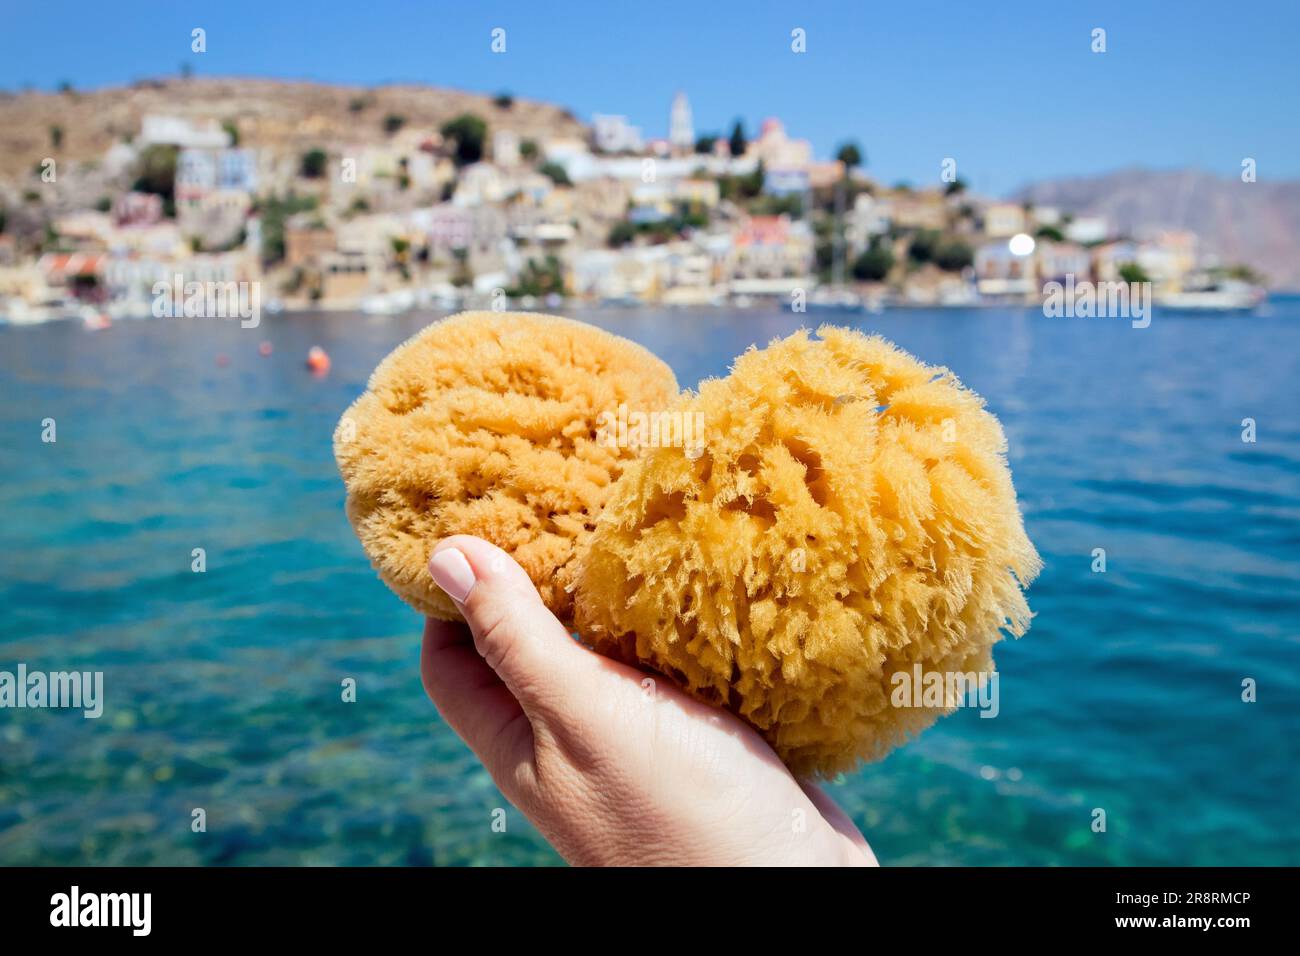 Personne touristique tenant une éponge de mer grecque de l'île de Symi, avec la ville de Symi en arrière-plan le jour d'été ensoleillé. Symi est populaire pour son éponge de mer. Banque D'Images